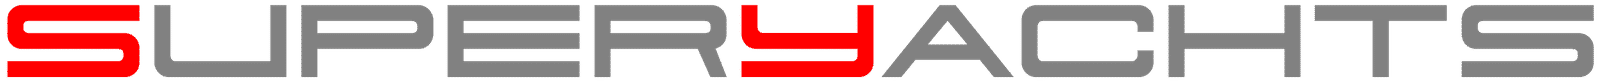 logo superyachts 2023 grigio e rosso 1600